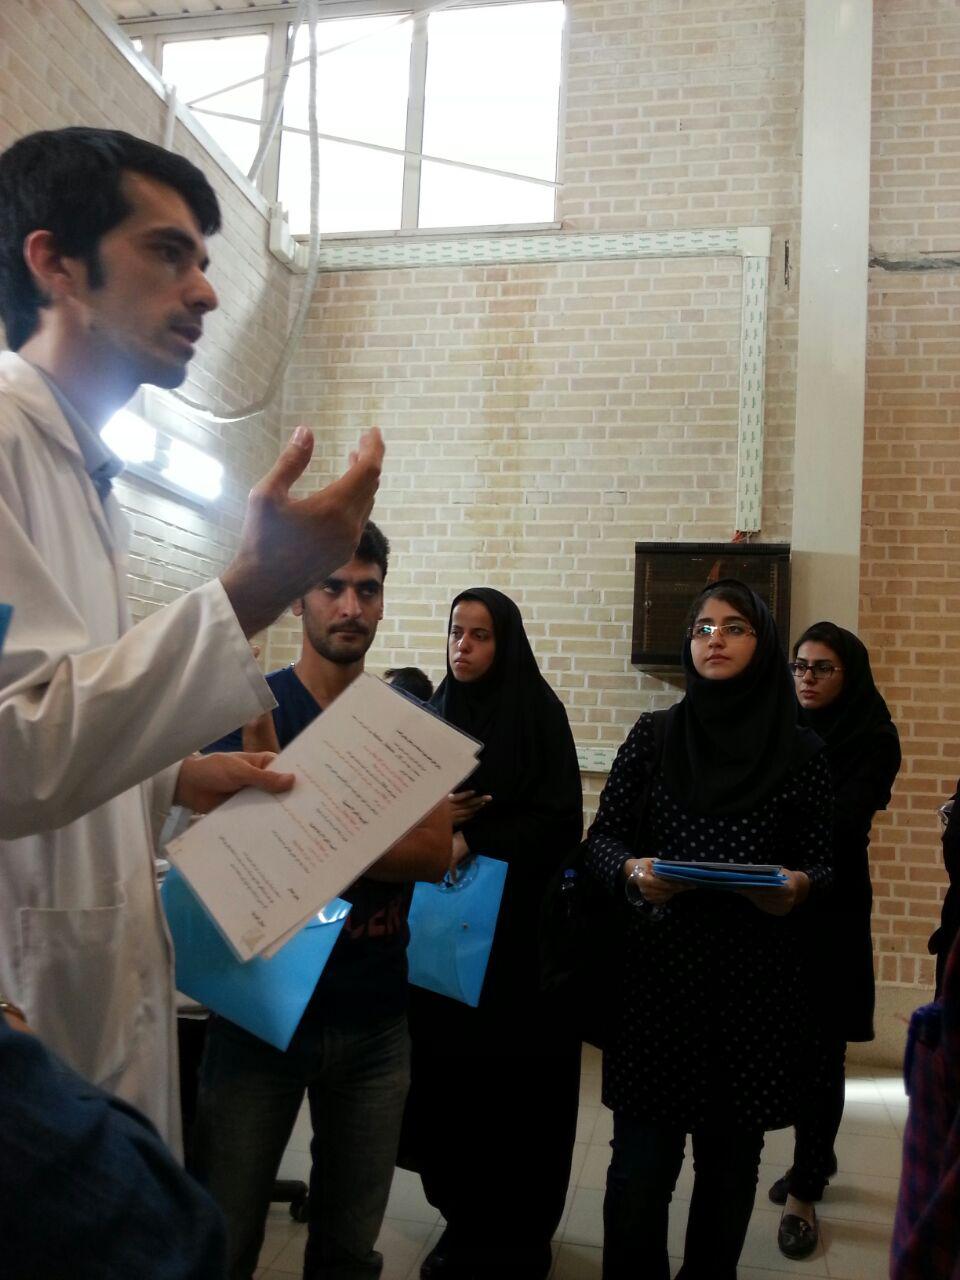 انجمن علمی زمین شناسی دانشگاه شهیدبهشتی تهران|شرکت زرآزما و دانشگاه